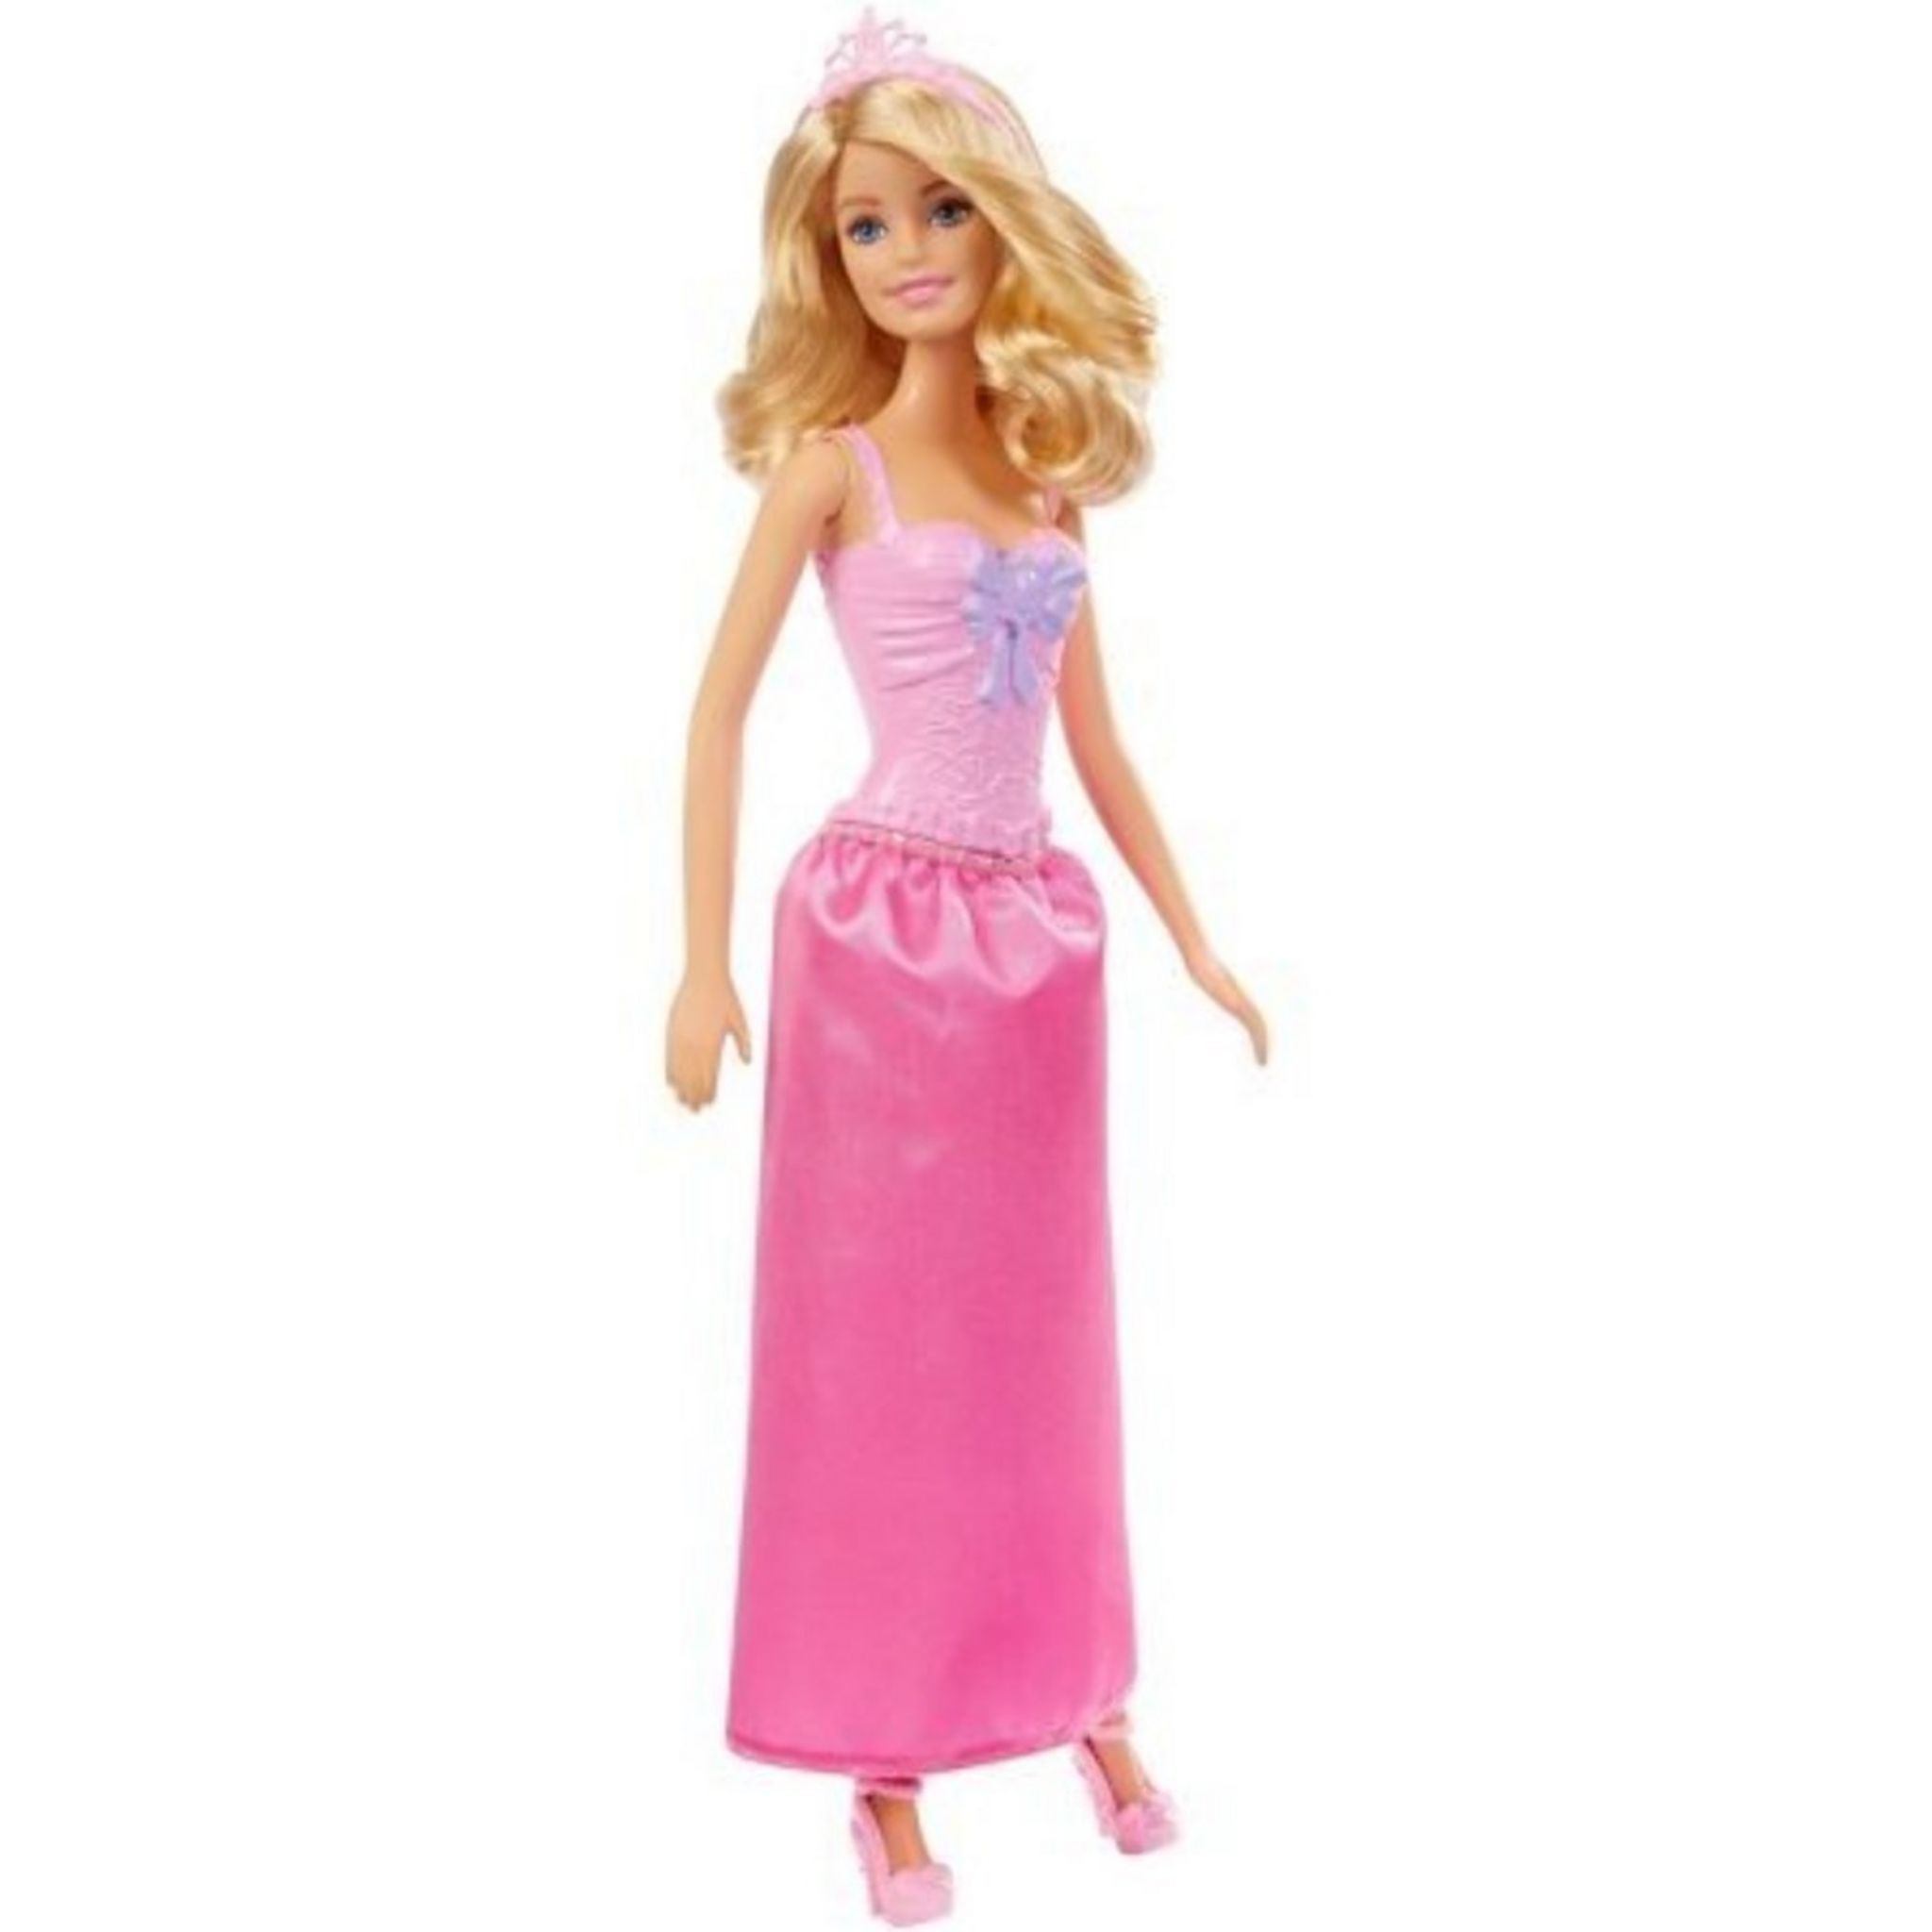 Игрушка барби купить. Кукла Маттель Барби. Игрушка Barbie принцессы dmm06. Кукла Mattel Barbie принцесса. Barbie в сиреневом платье dmm08.